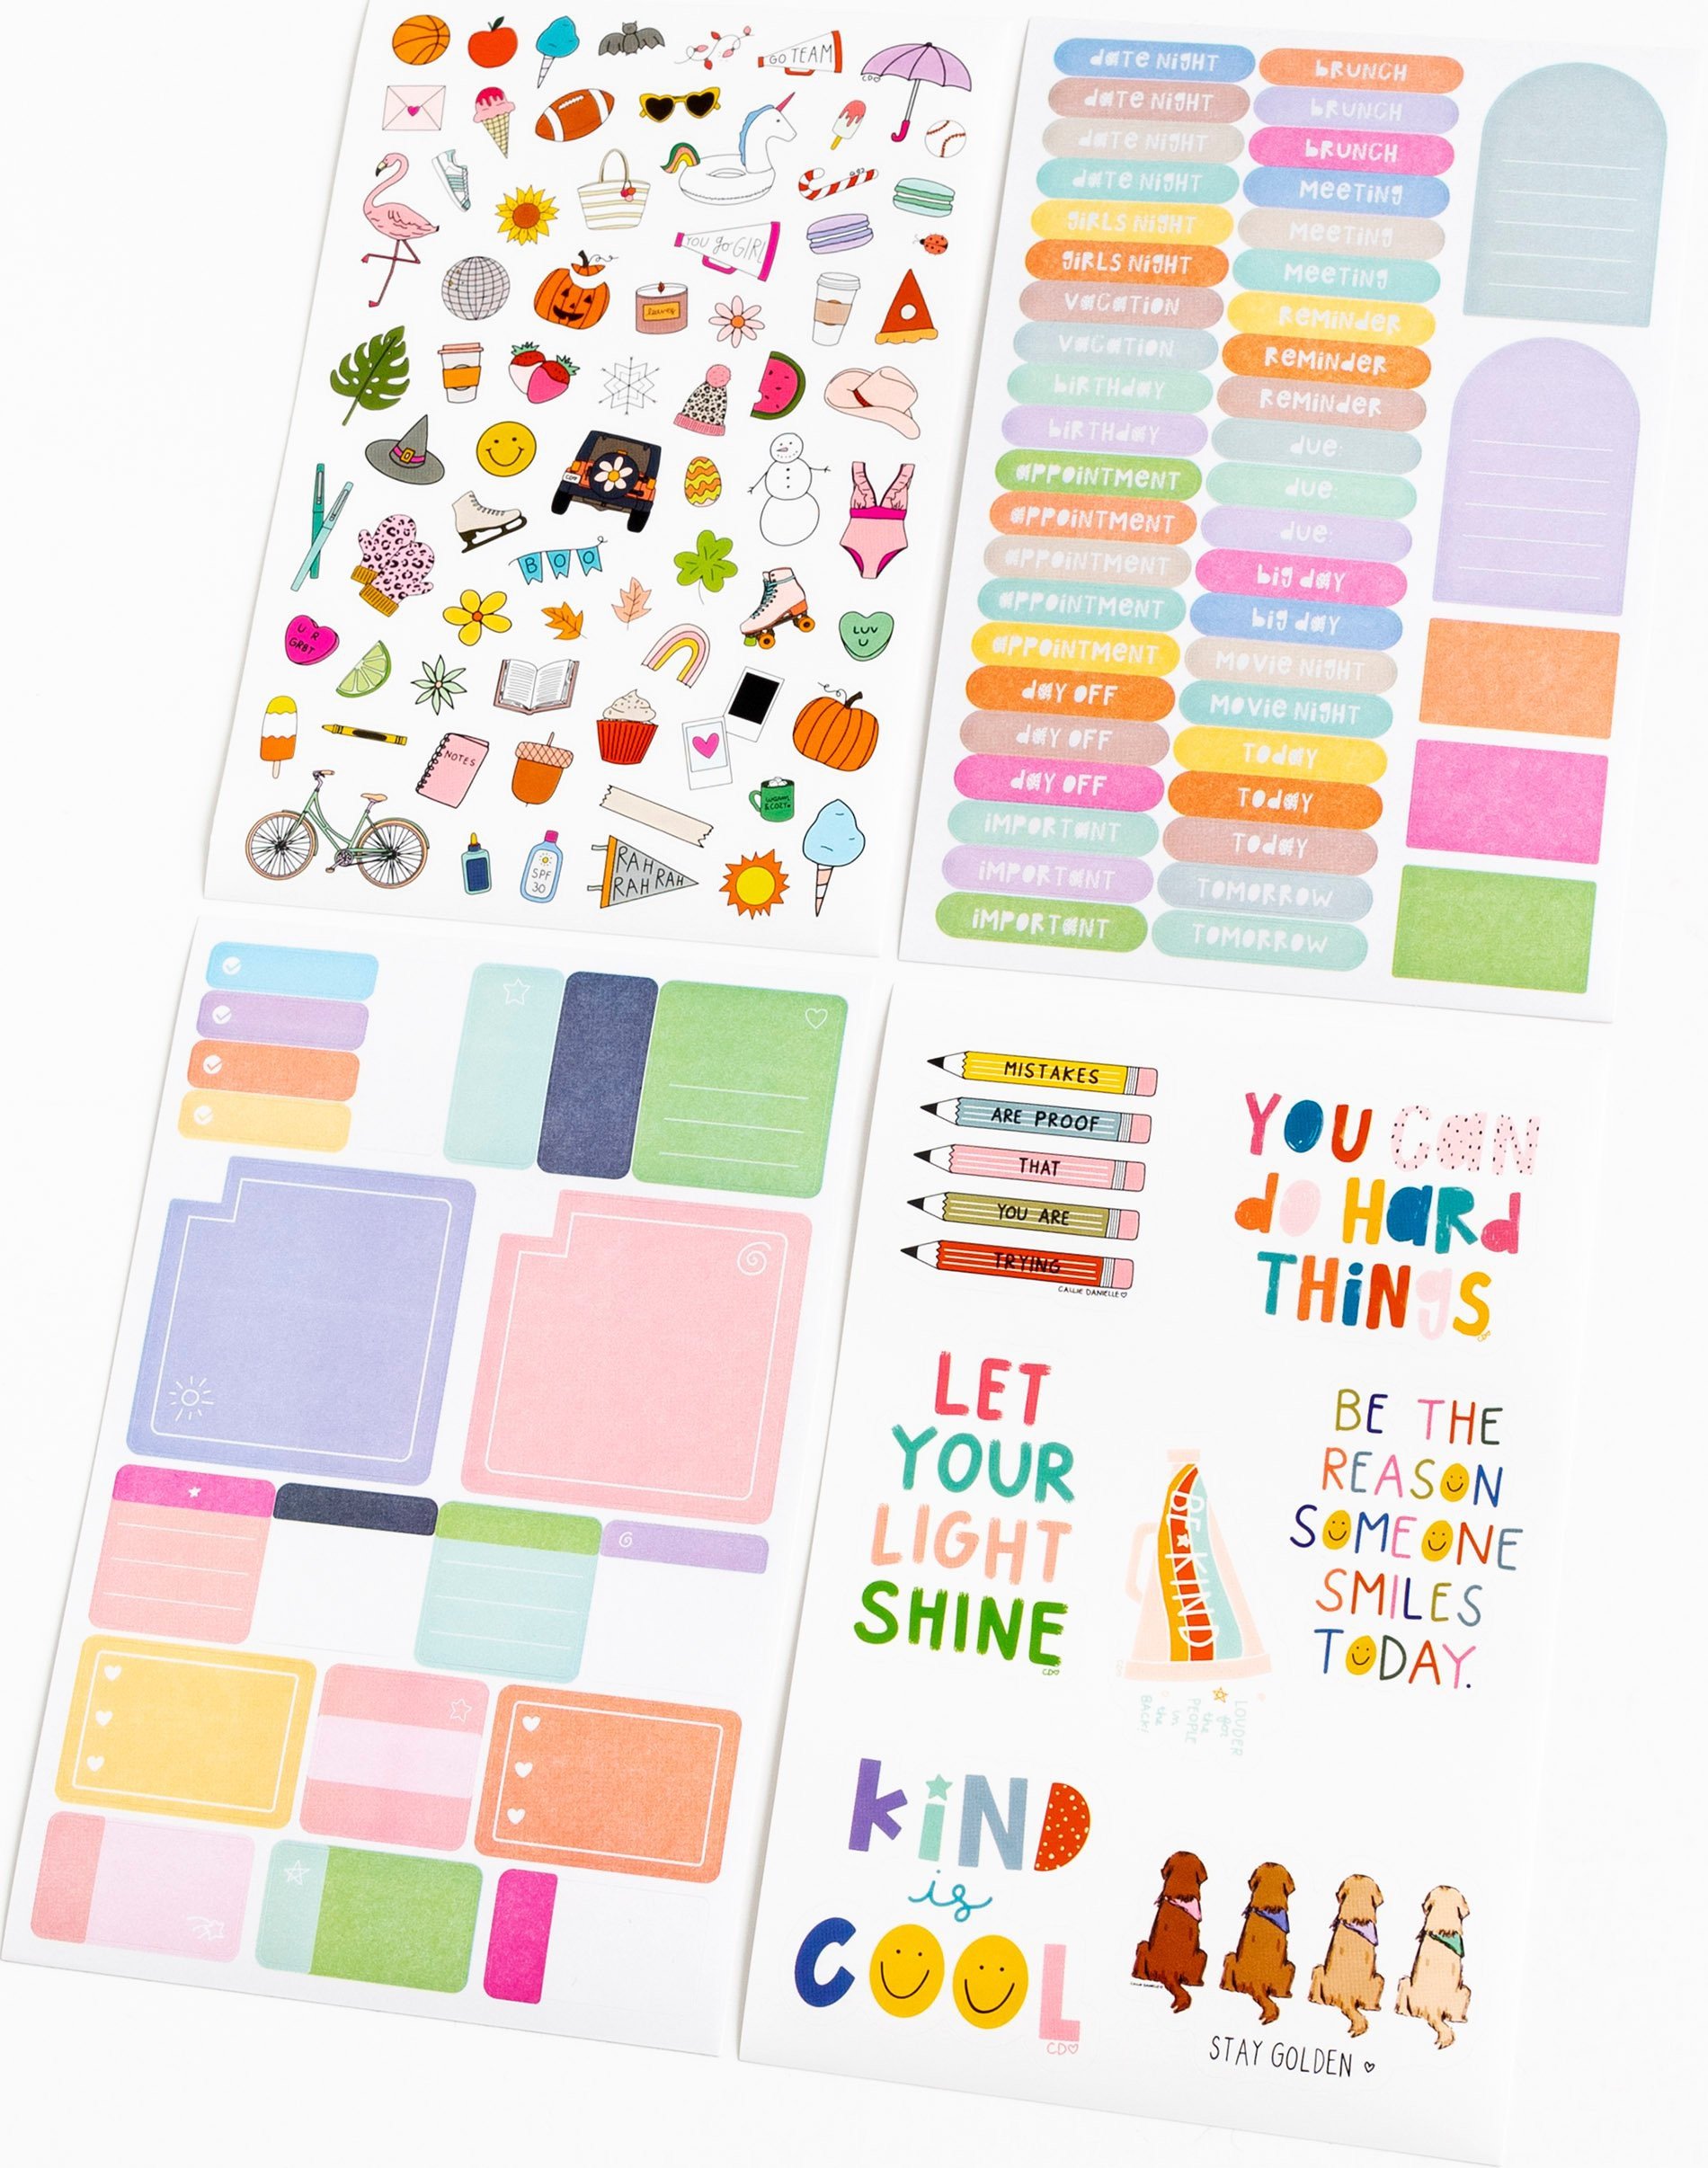 Night Shift Sticker, Work Stickers, Planner Stickers, Text Stickers, S –  Littlestarplans